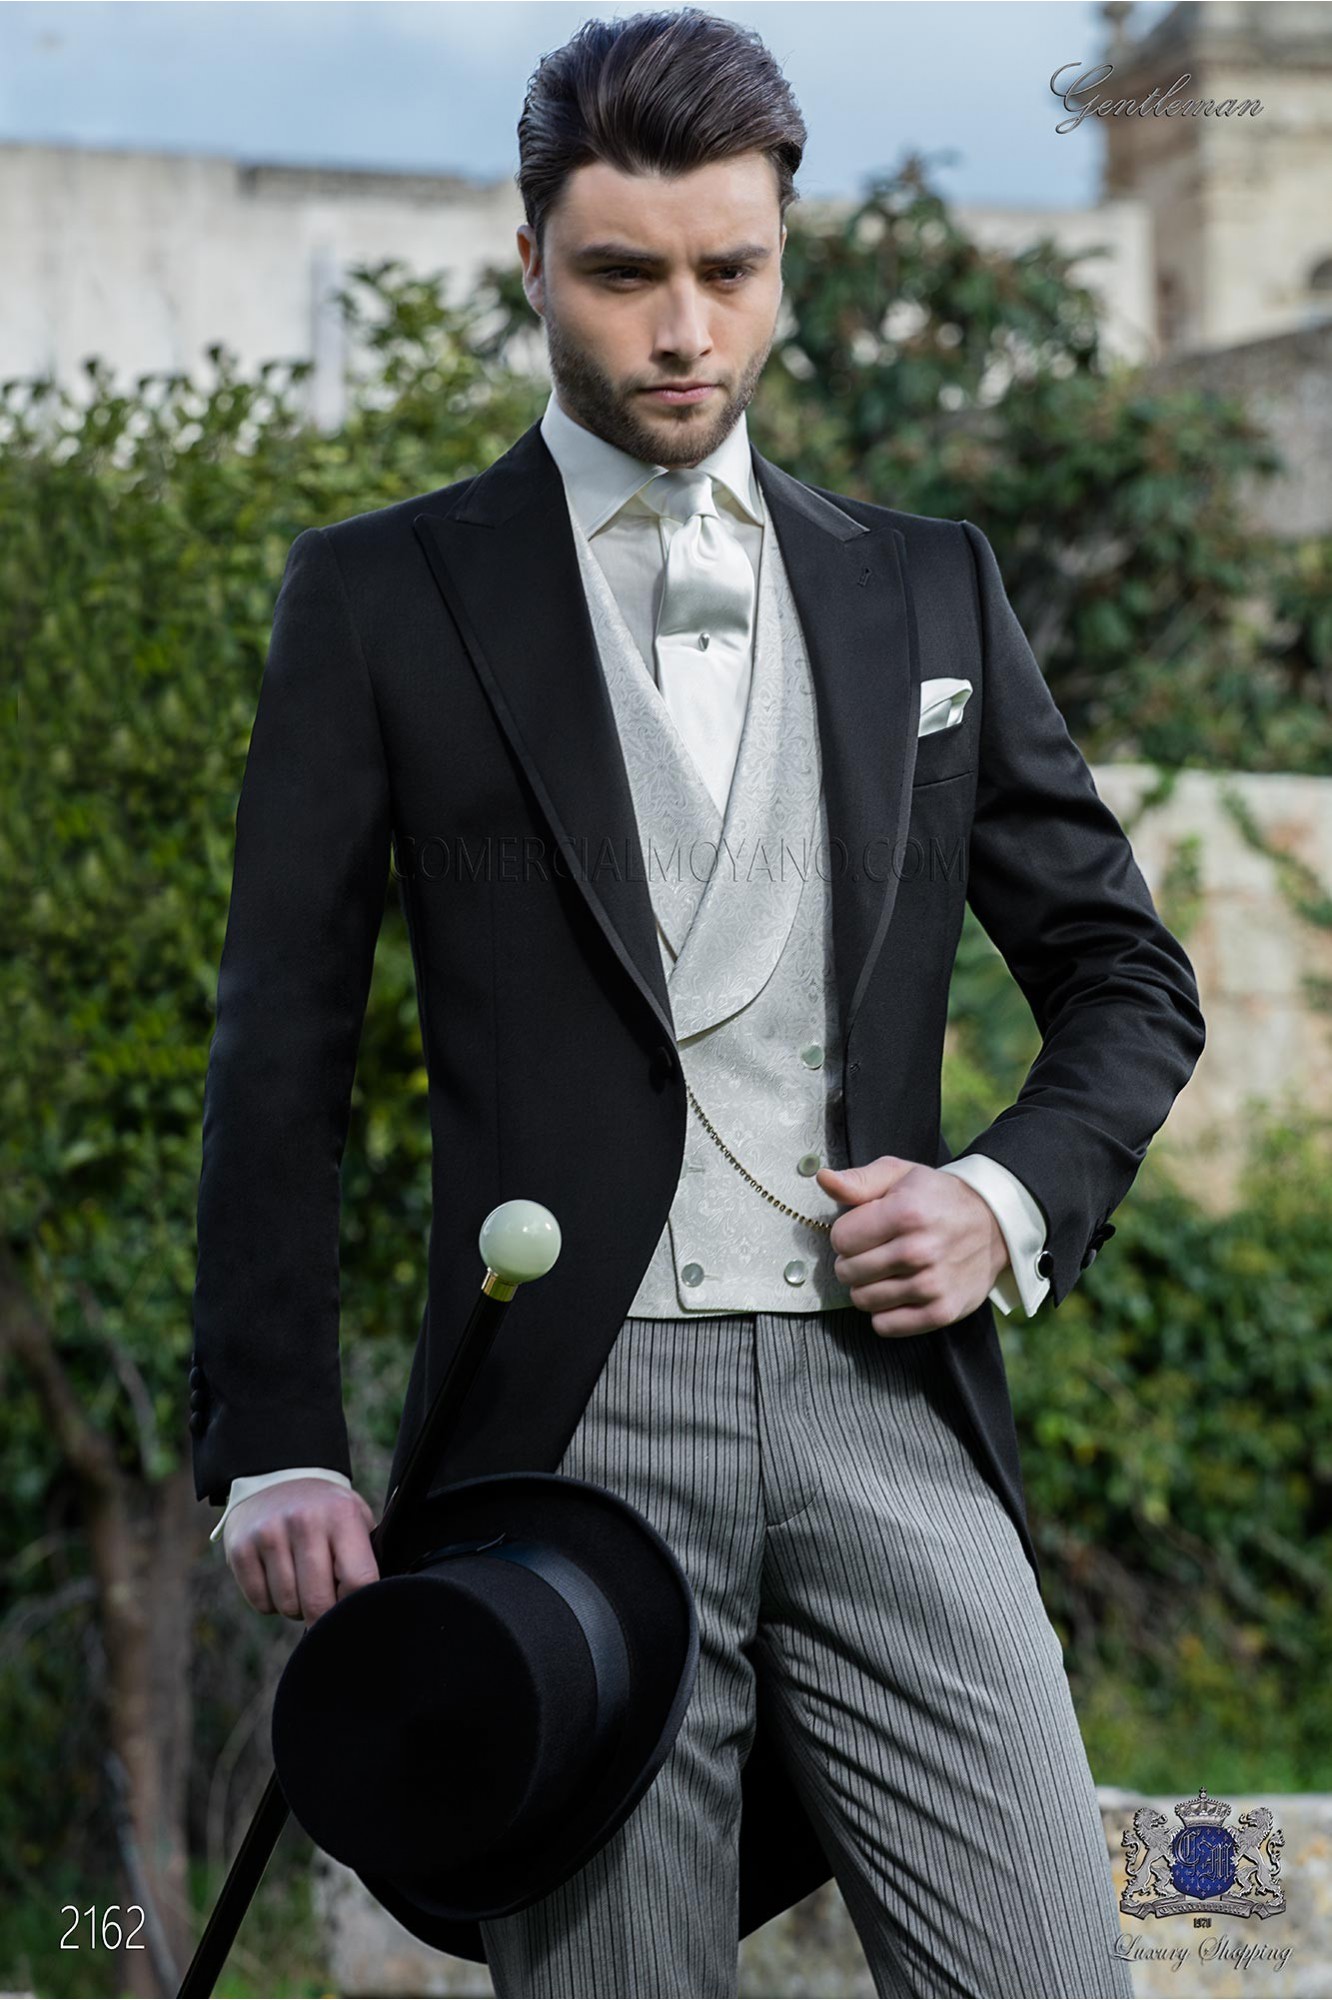 Chaqué negro pura lana con pantalón de etiqueta modelo: 2162 Mario Moyano colección Gentleman